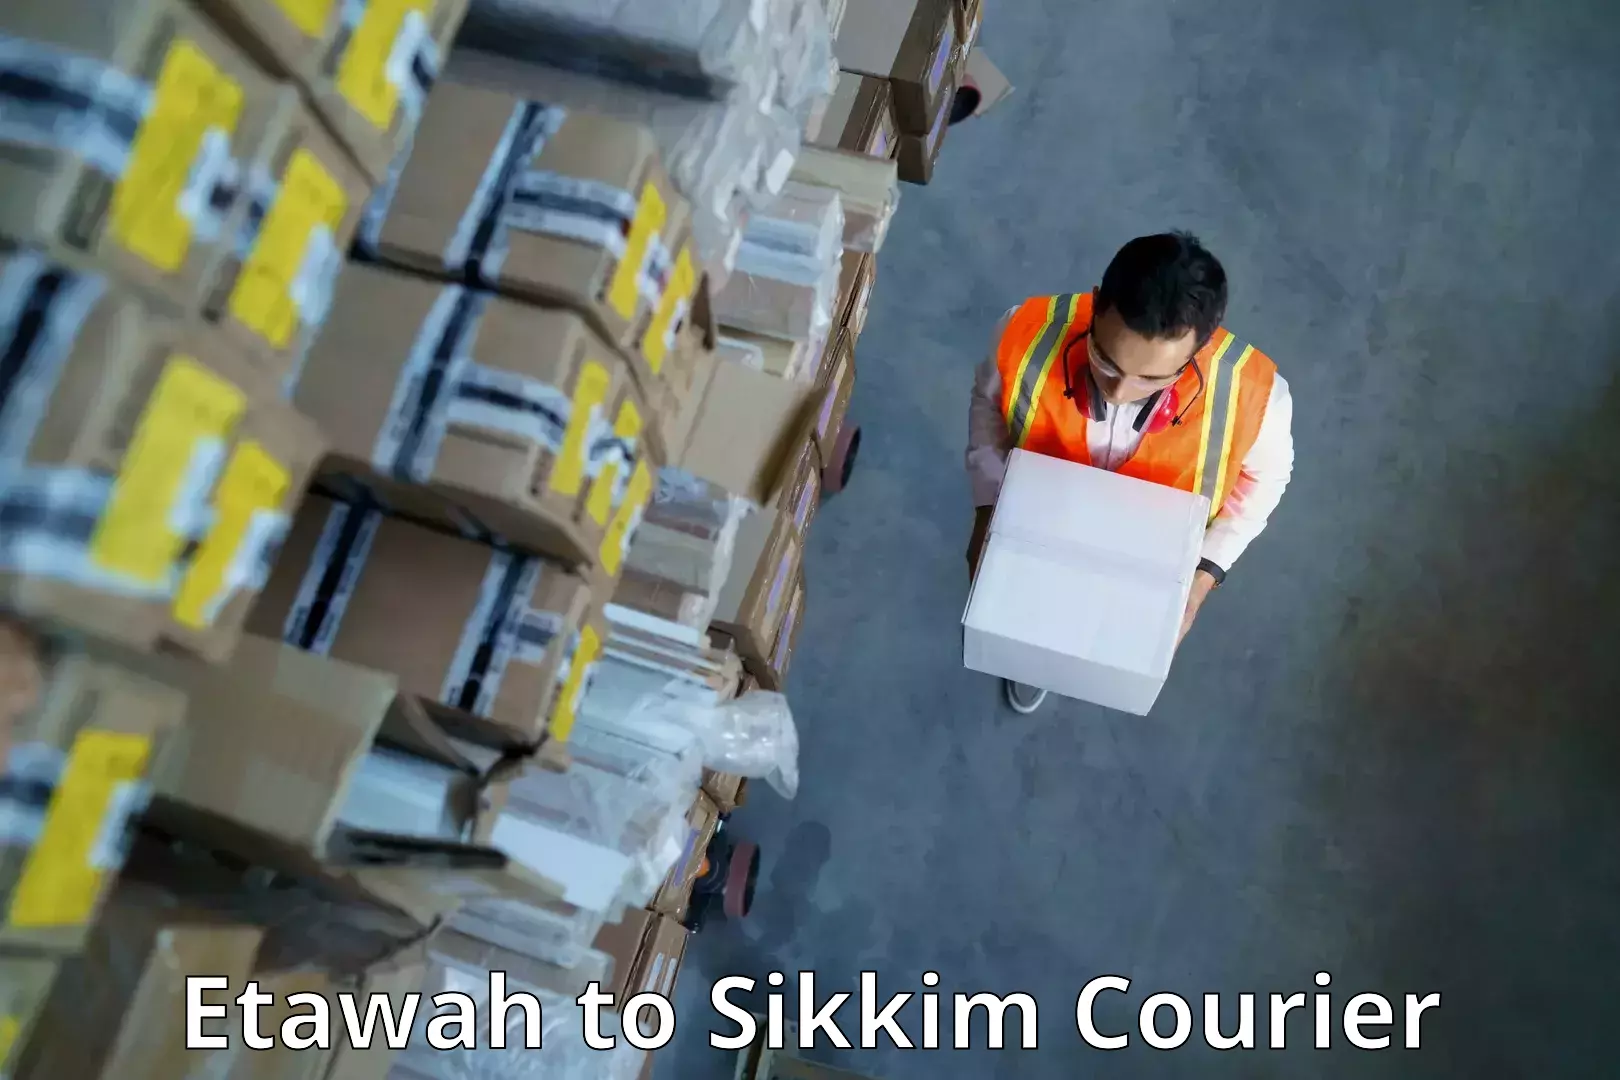 Express logistics service Etawah to NIT Sikkim